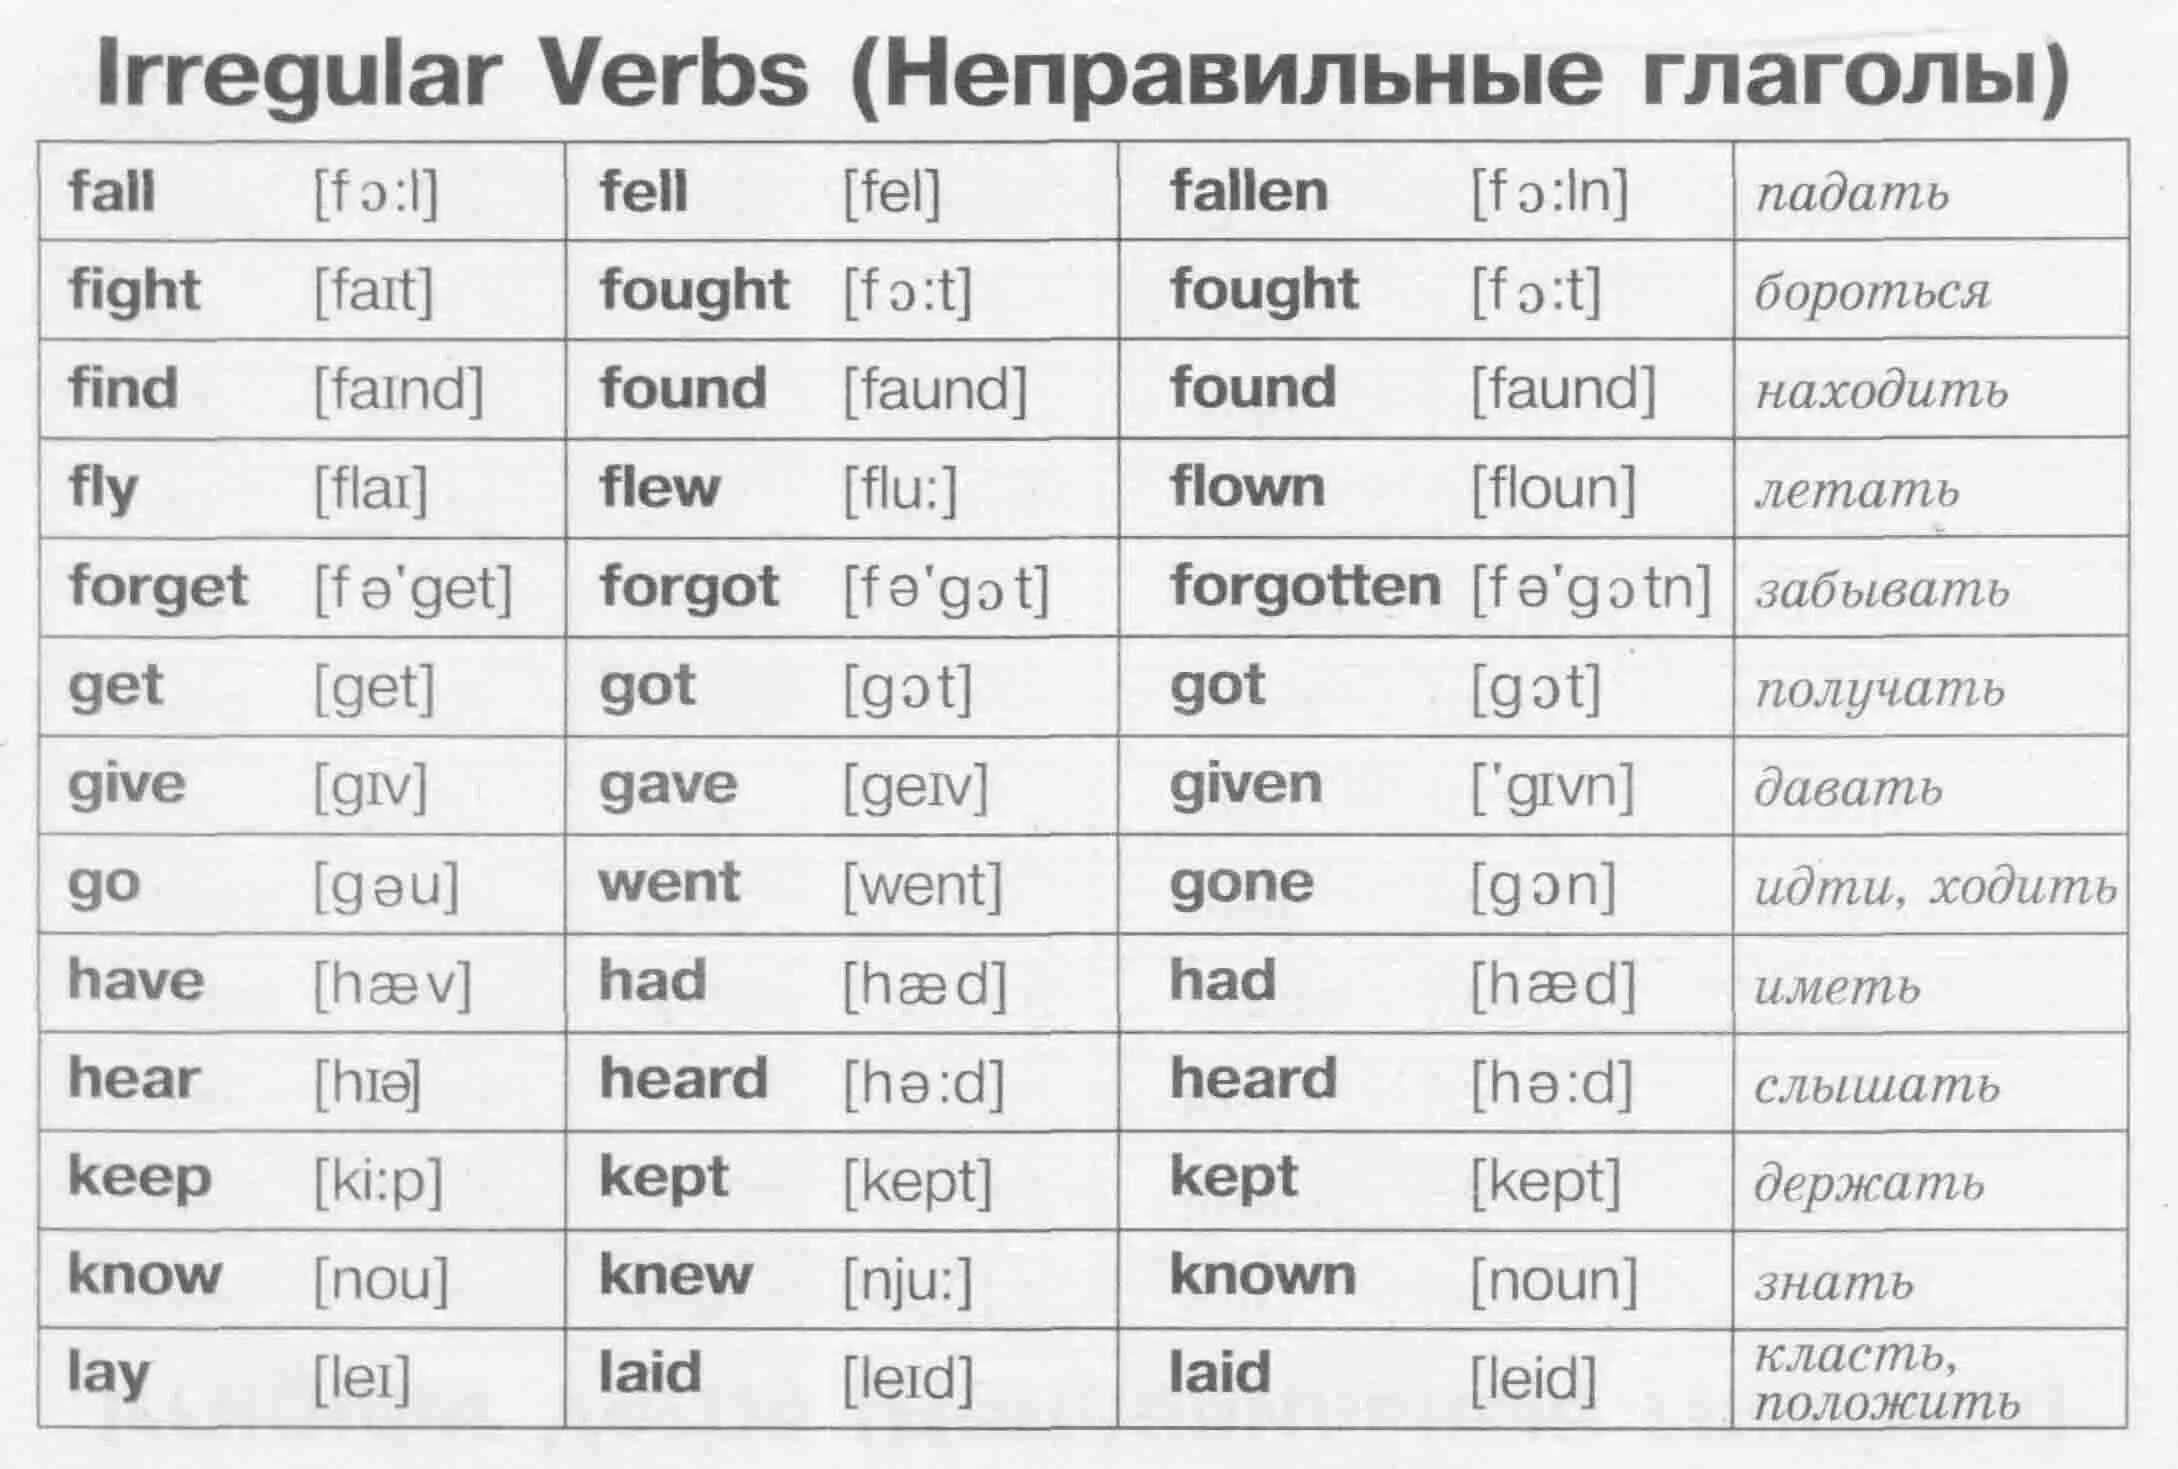 Foot перевод на русский язык с английского. 3 Форма глагола англ. Три формы неправильных глаголов в англ языке. Три формы глагола в английском языке. Таблица третьих форм глаголов в английском.